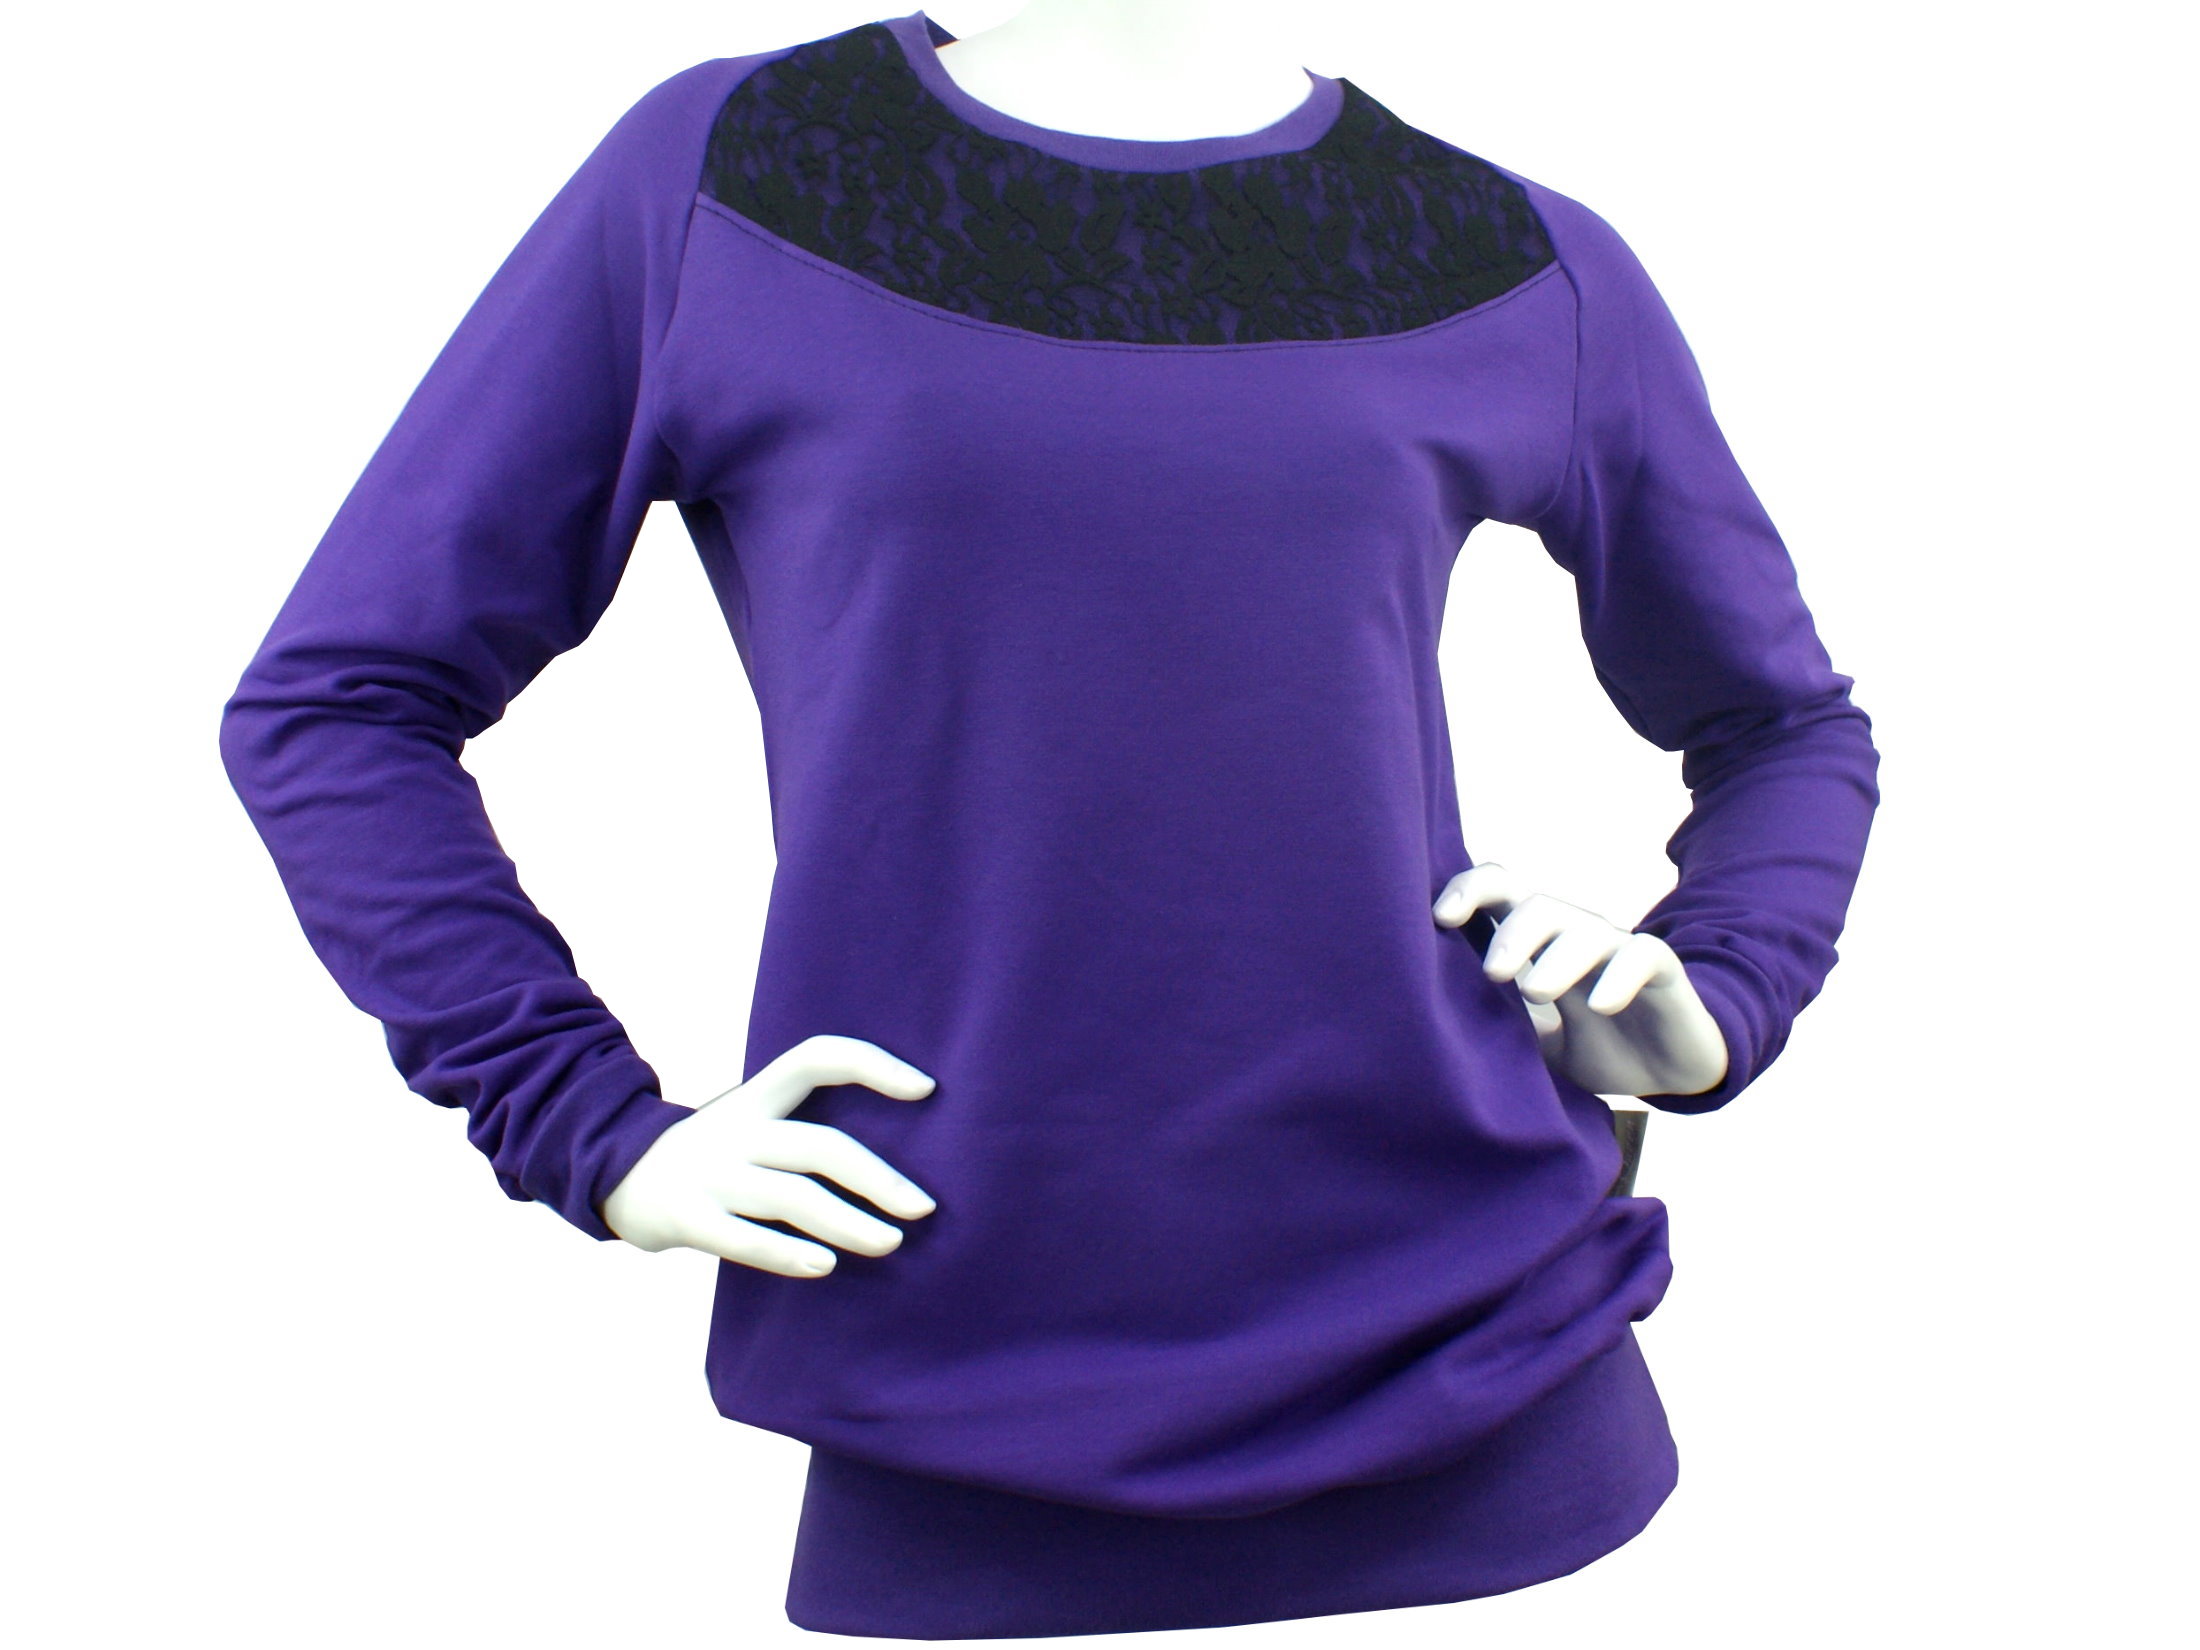 Damen Sweatshirt Pullover "Lace" lila schwarz mit Spitze